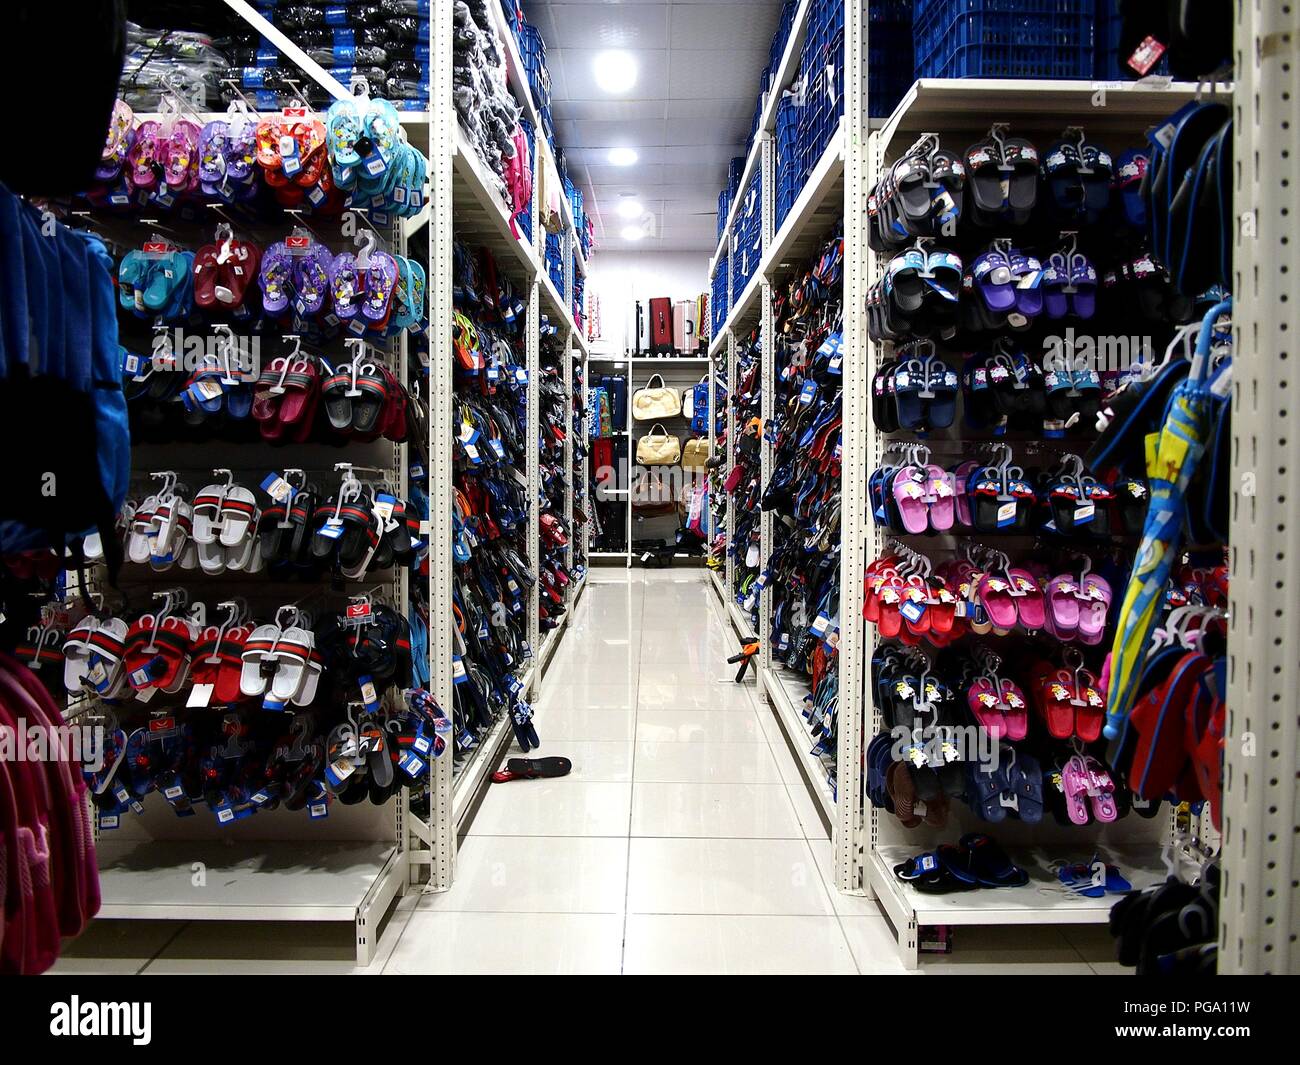 shoes shop philippines